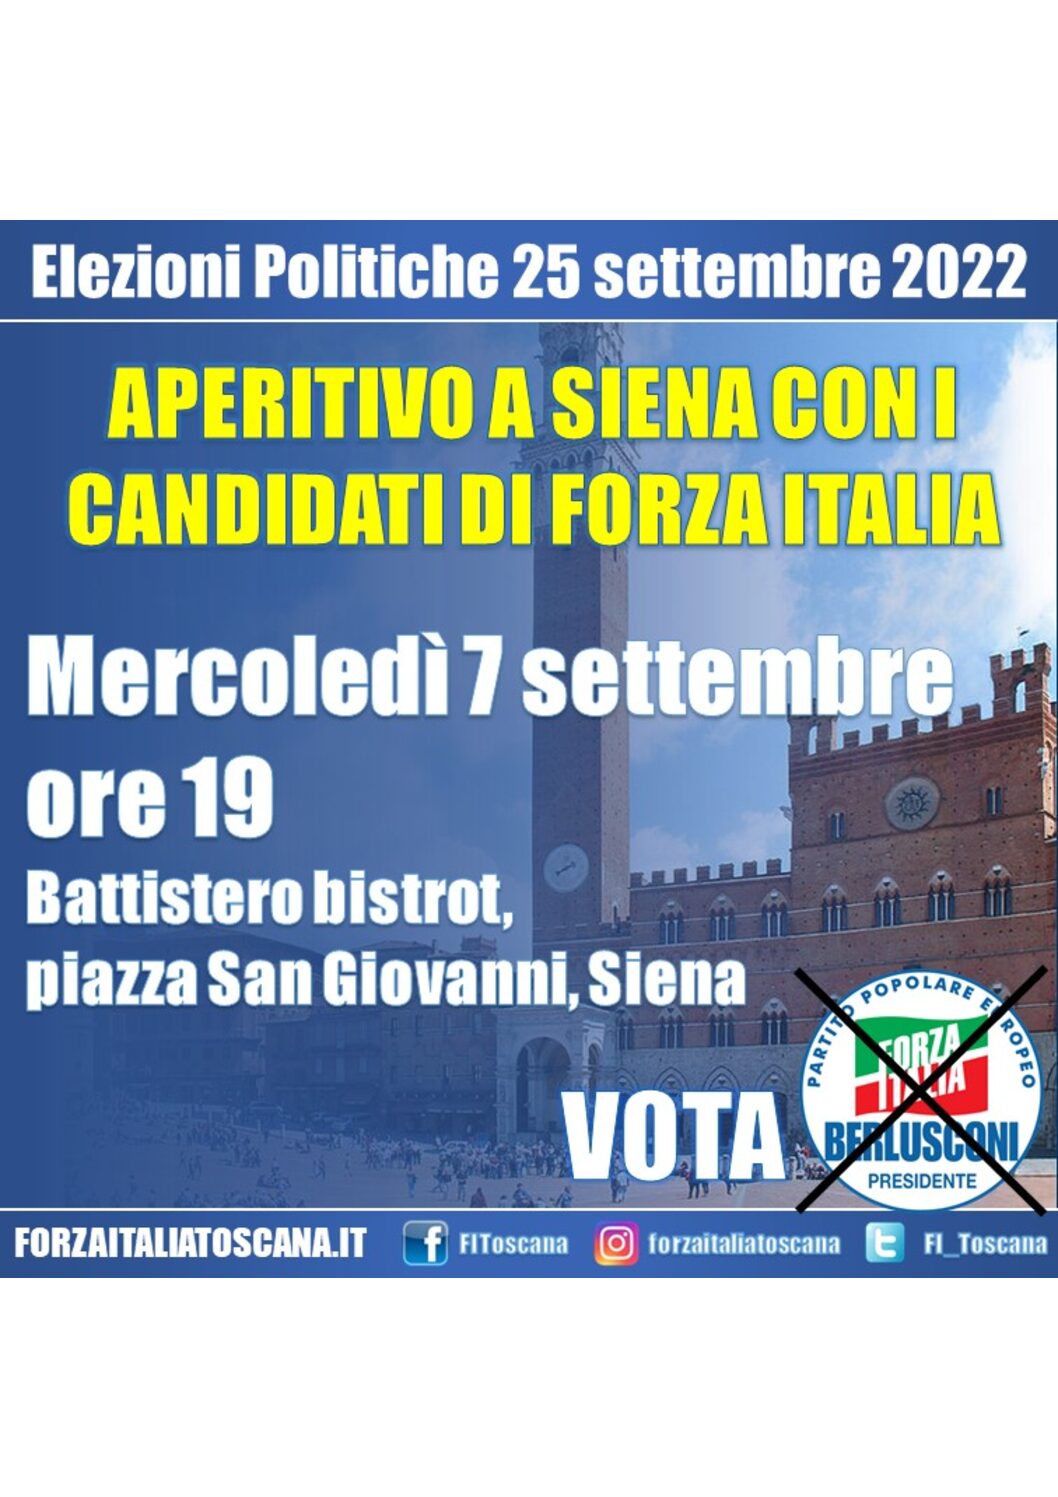 FI Siena invita all’aperitivo con i candidati